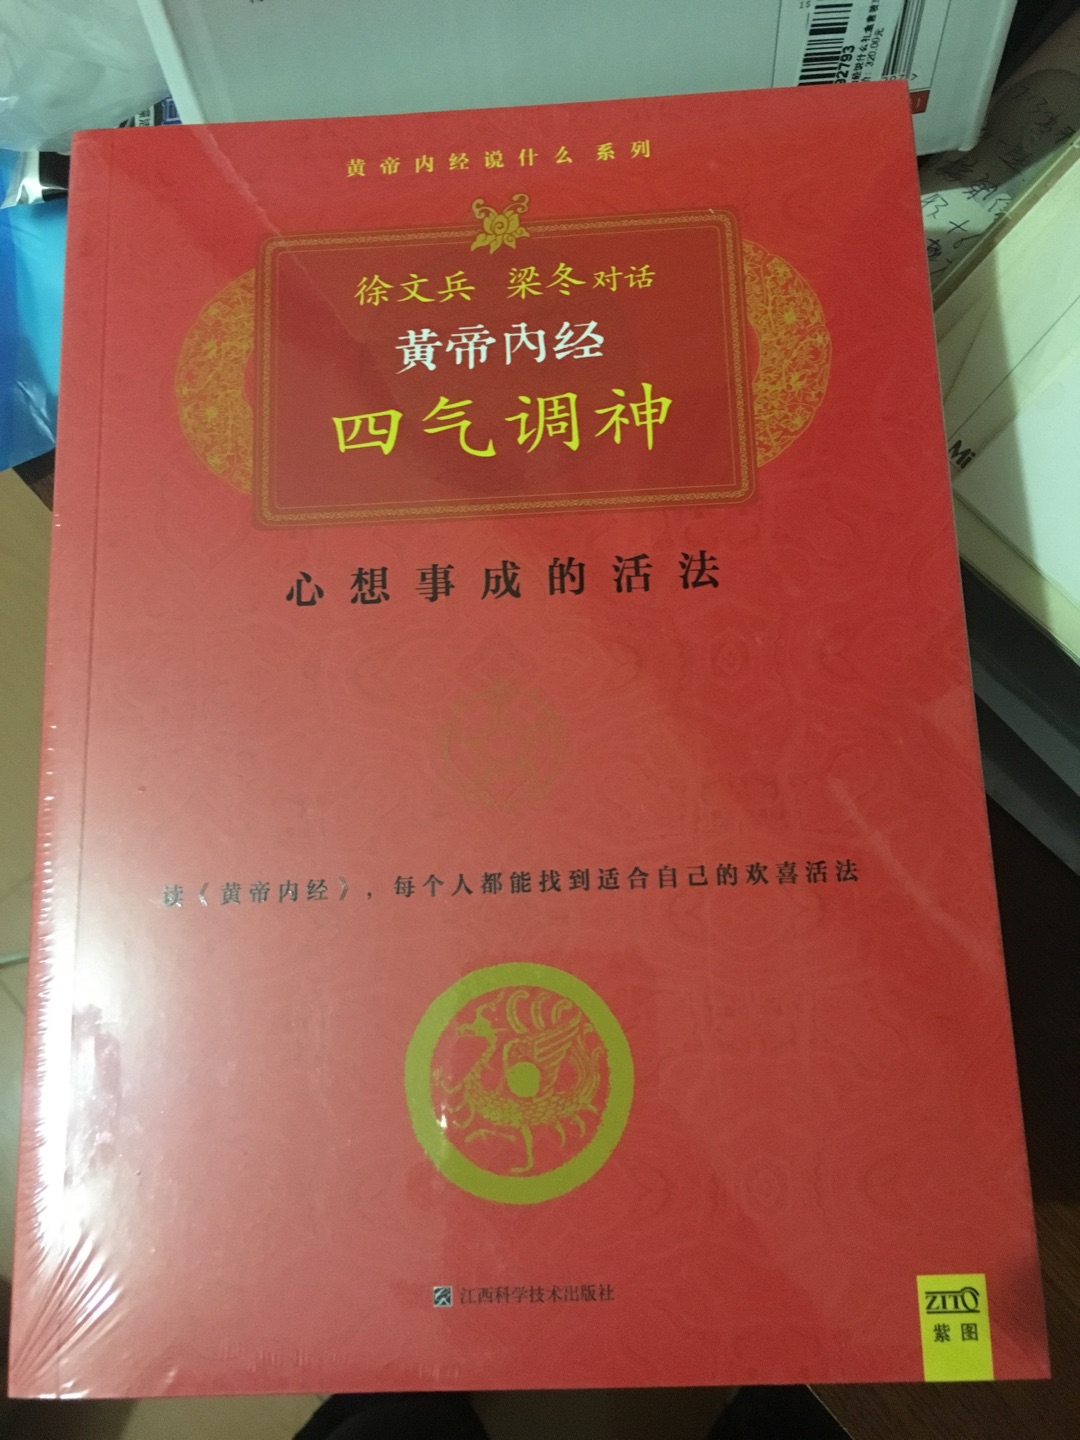 我期待已久的书了，一直喜欢中国文化